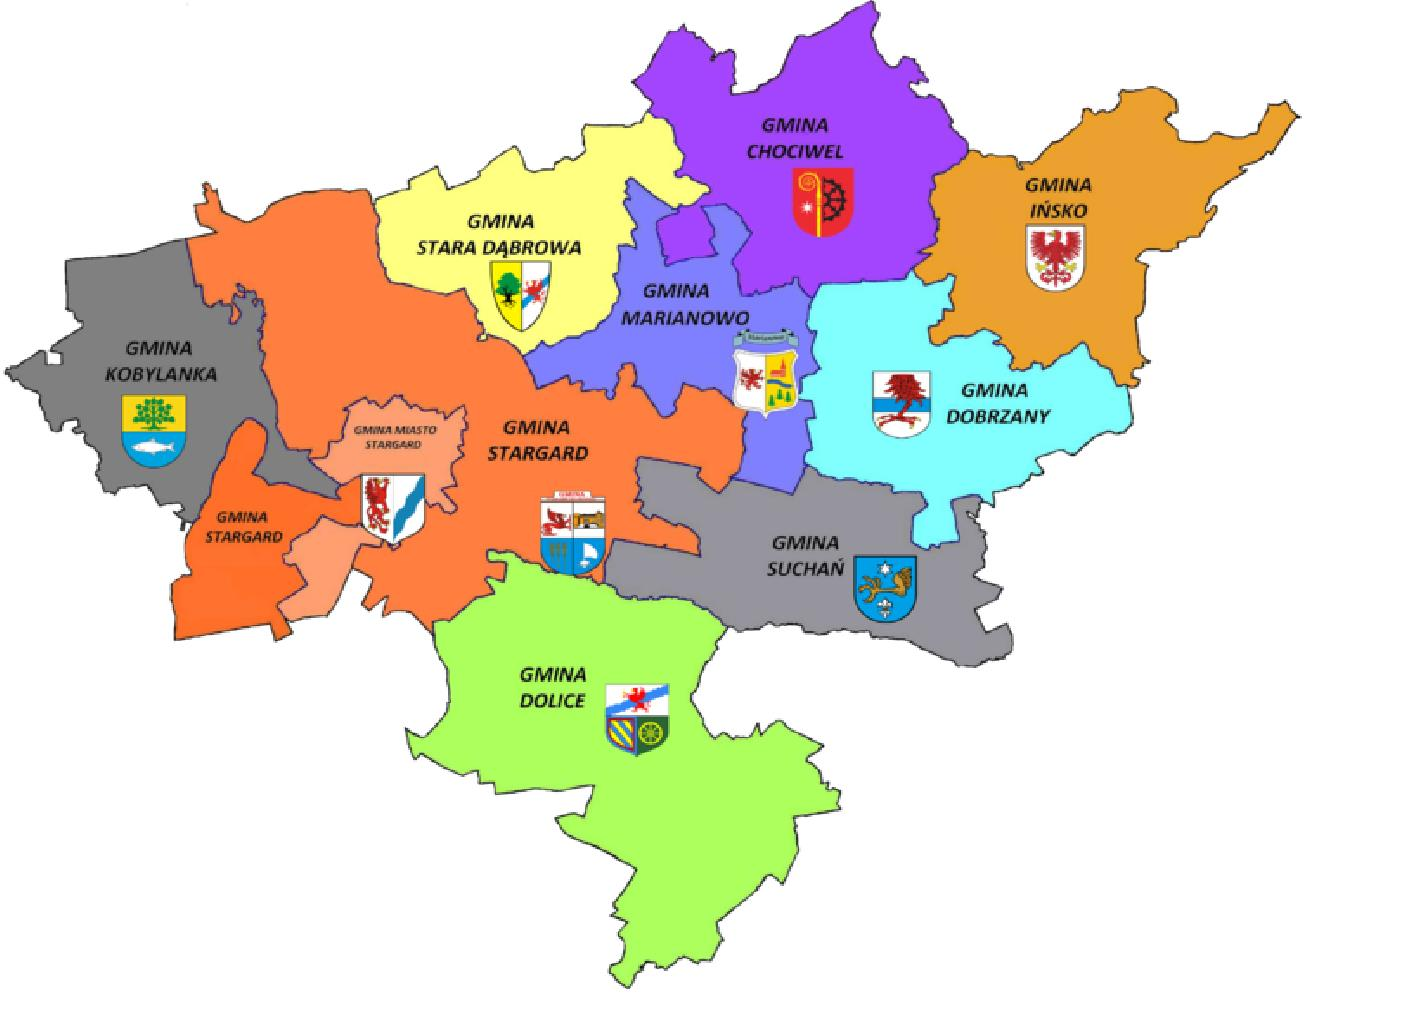 Największą powierzchnię zajmuje gmina wiejska Stargard, a następnie gmina Ińsko i Dolice, natomiast do najmniejszych zaliczyć można: gminę miejską Stargard, gminę Marianowo oraz gminę Stara Dąbrowa.